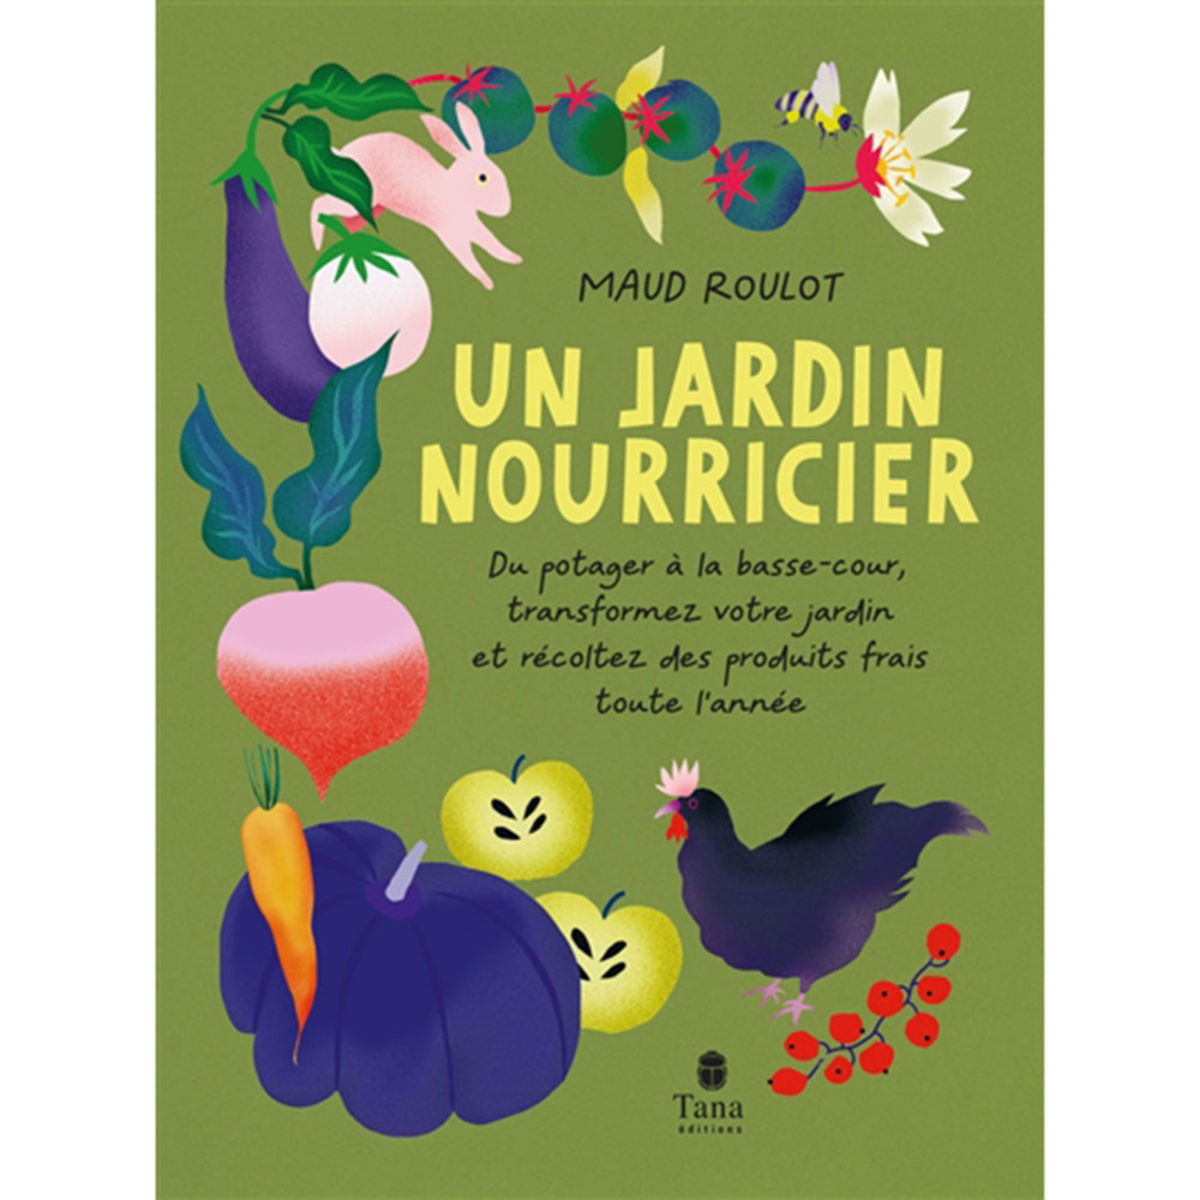 Oiseaux des jardins : graines et alimentation pour oiseaux du jardin -  botanic®